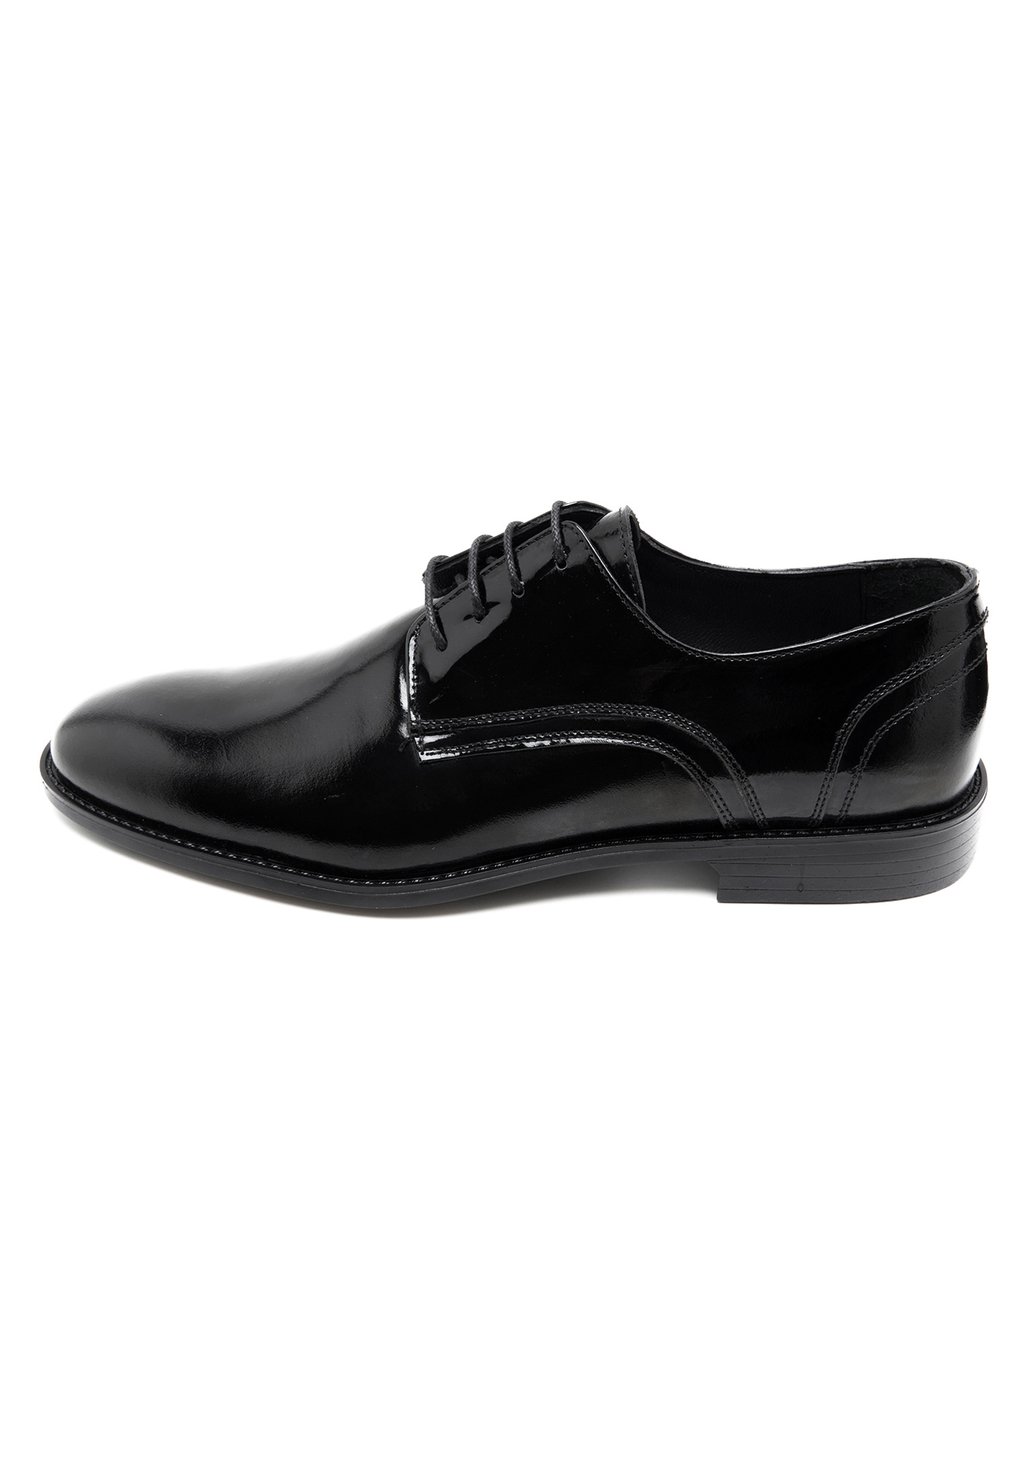 Деловые туфли на шнуровке Desa, цвет black спортивные туфли на шнуровке desa цвет dark blue